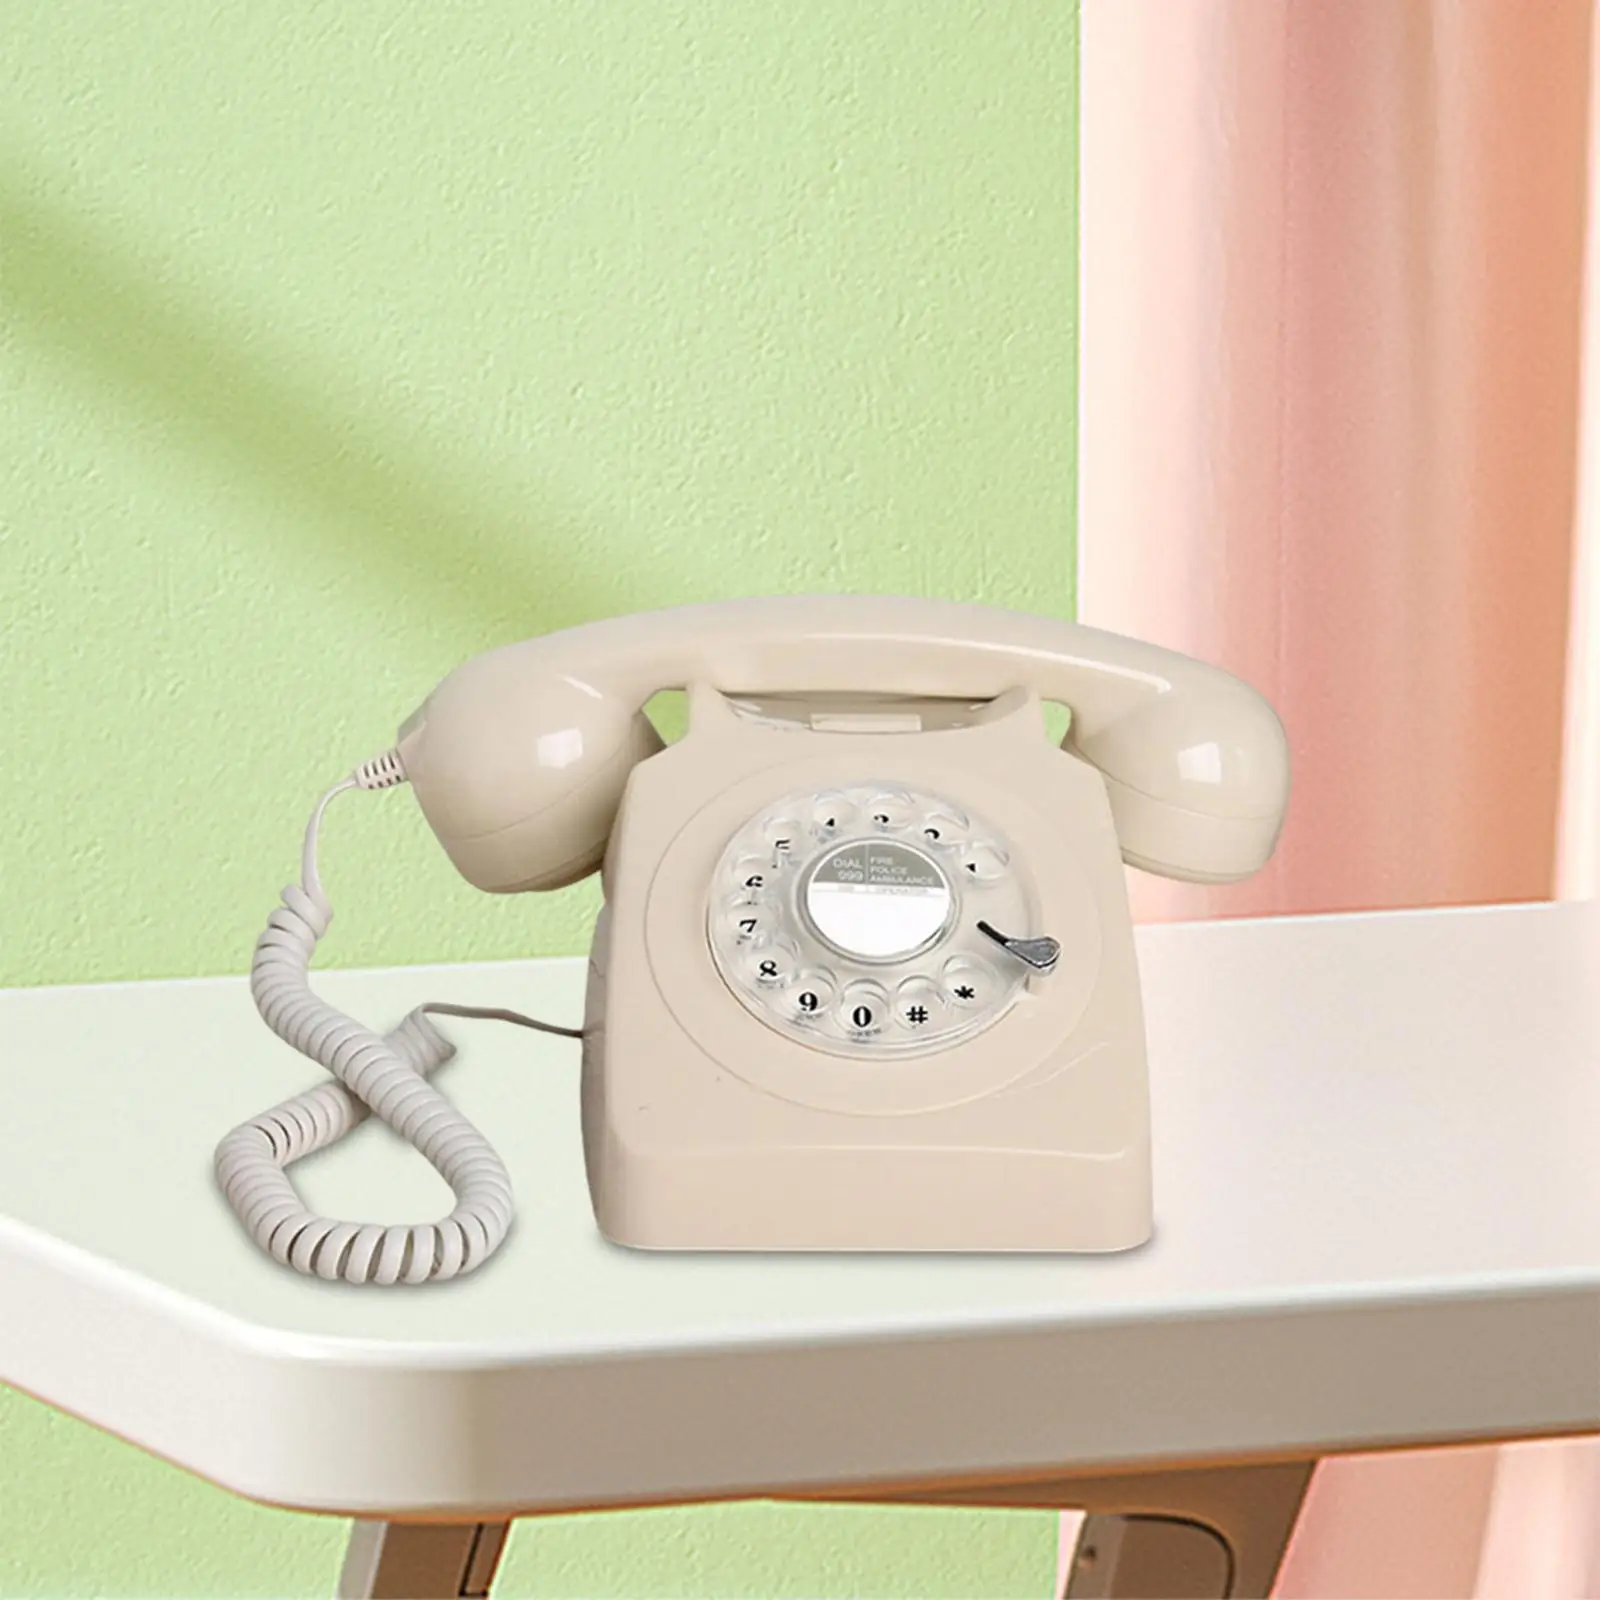 Retro Landline Telephone Vintage Rotary Phone Large Numeric Keypad 1960'Style Old Fashion Retro Phone for Living Room Decor